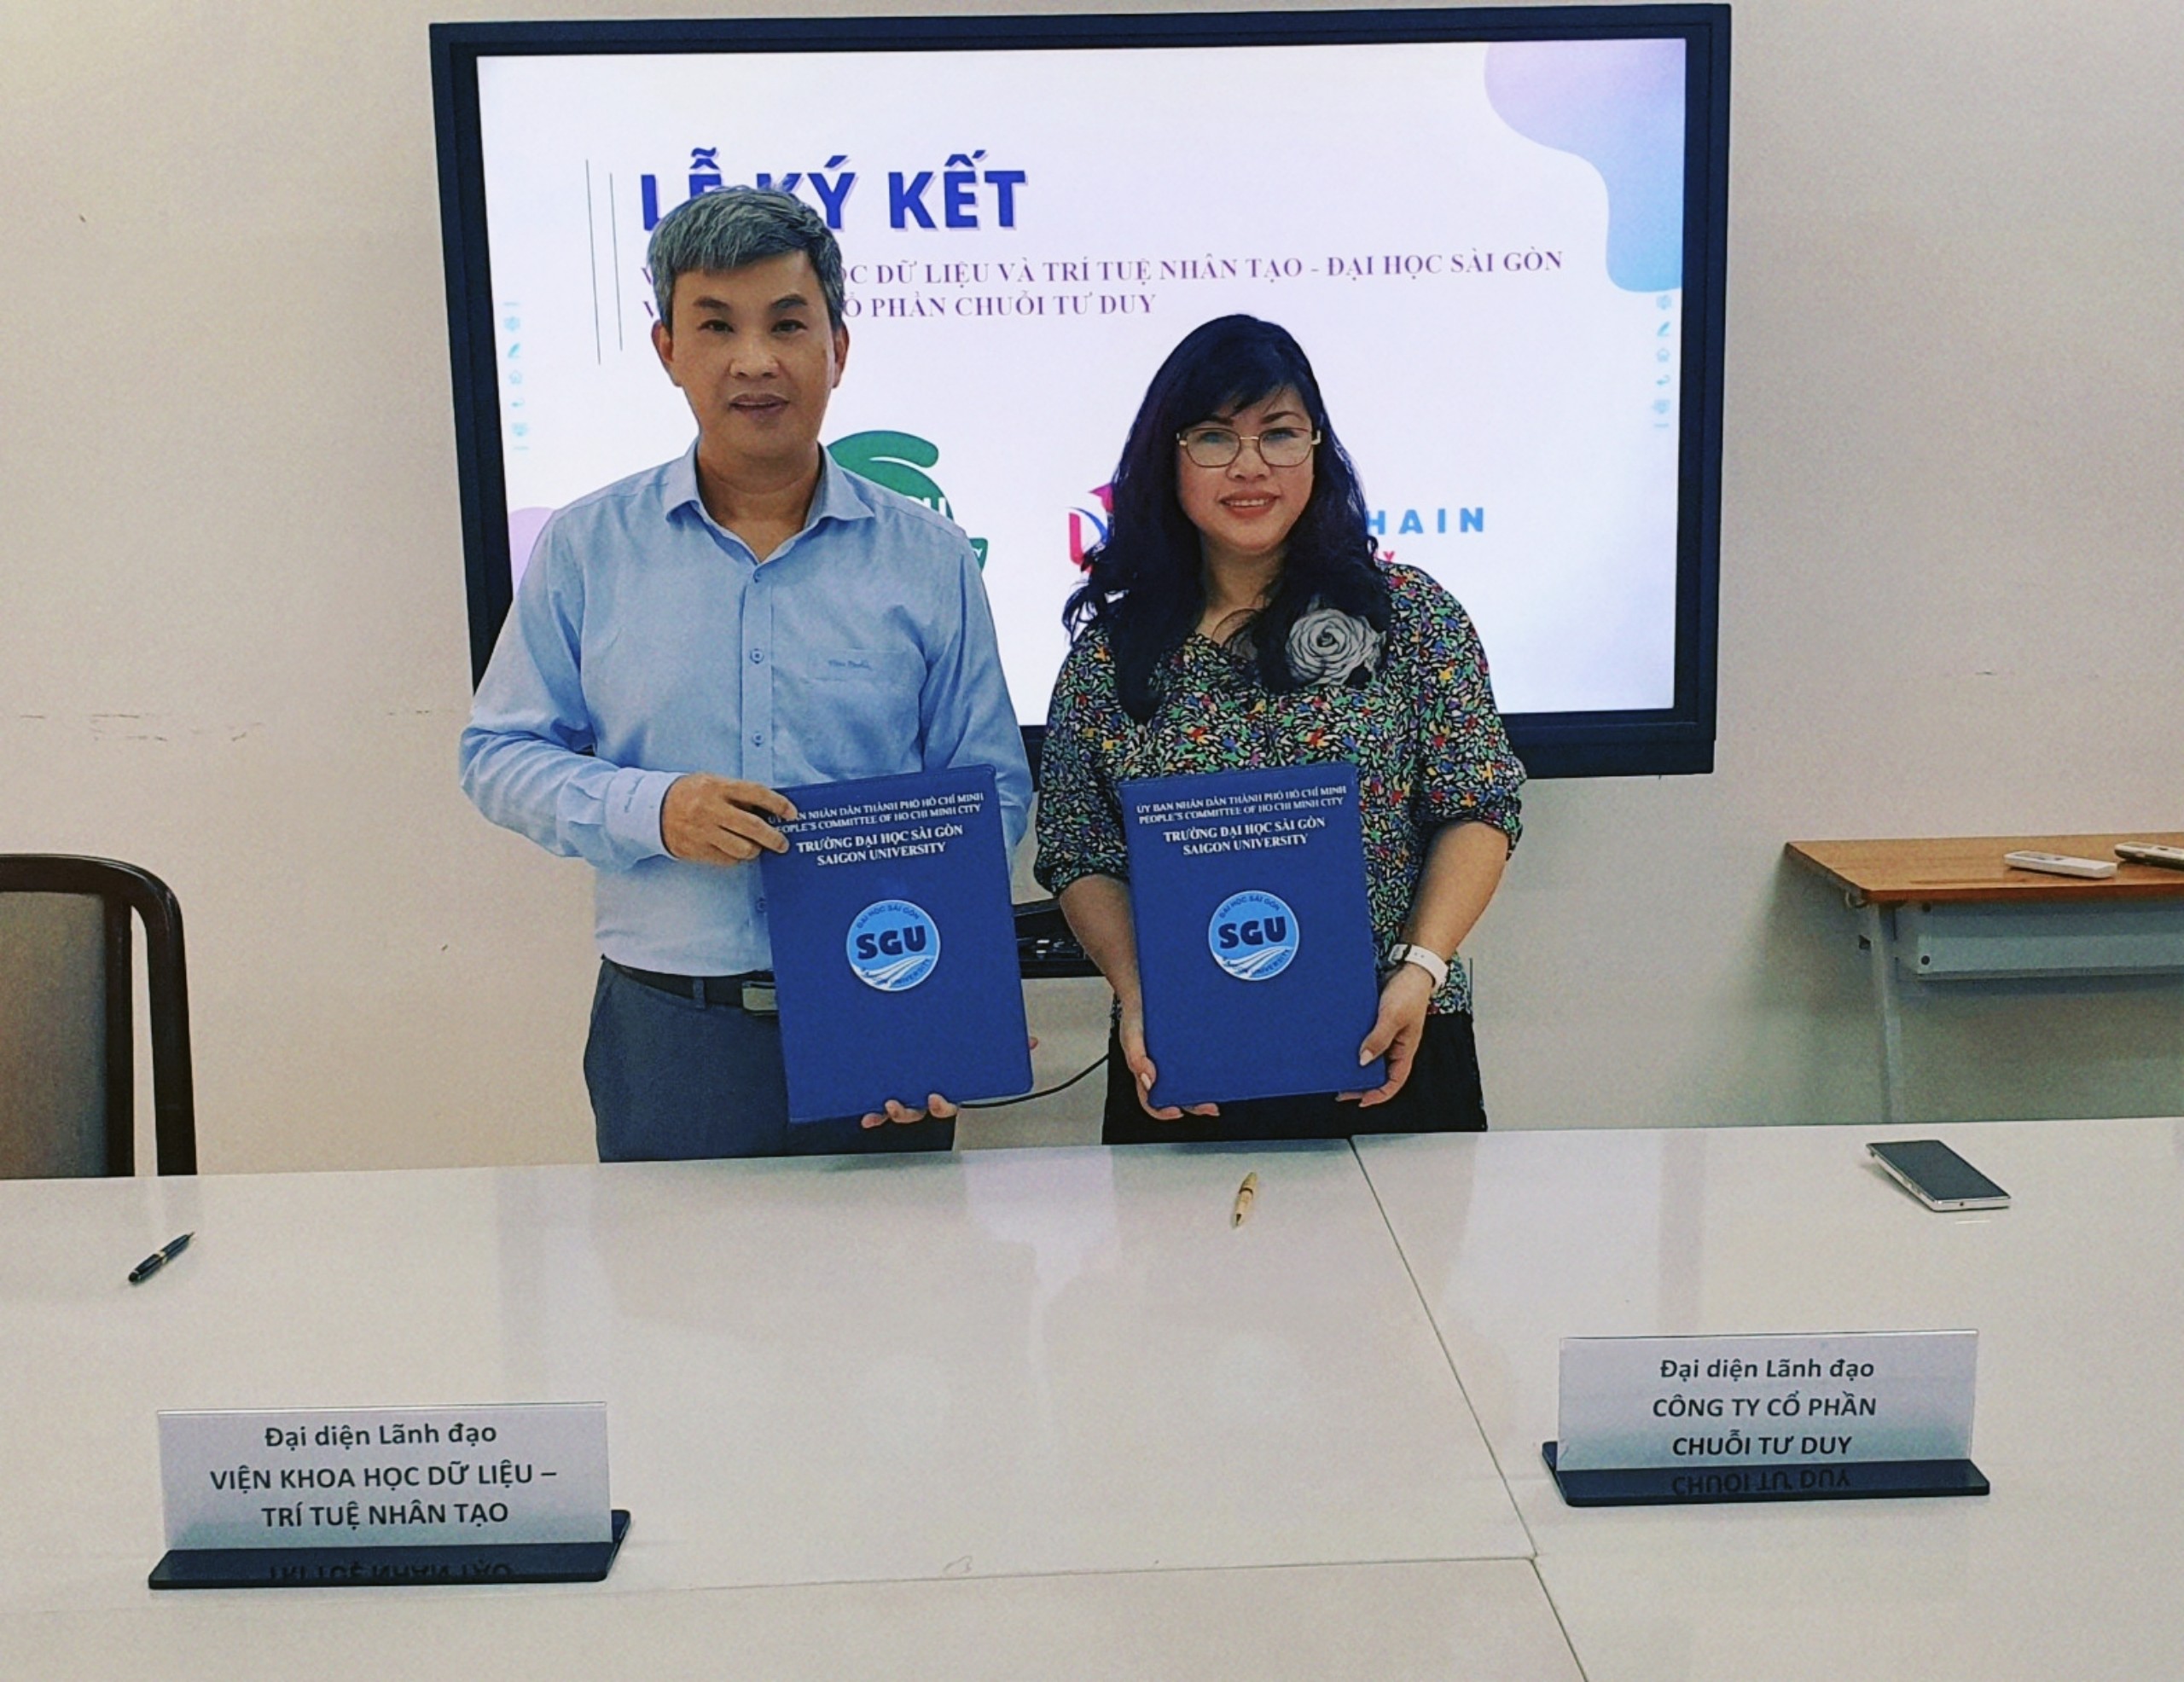 Mindchain Academy chính thức gia nhập cộng đồng giáo dục tại Tp Hồ Chí Minh